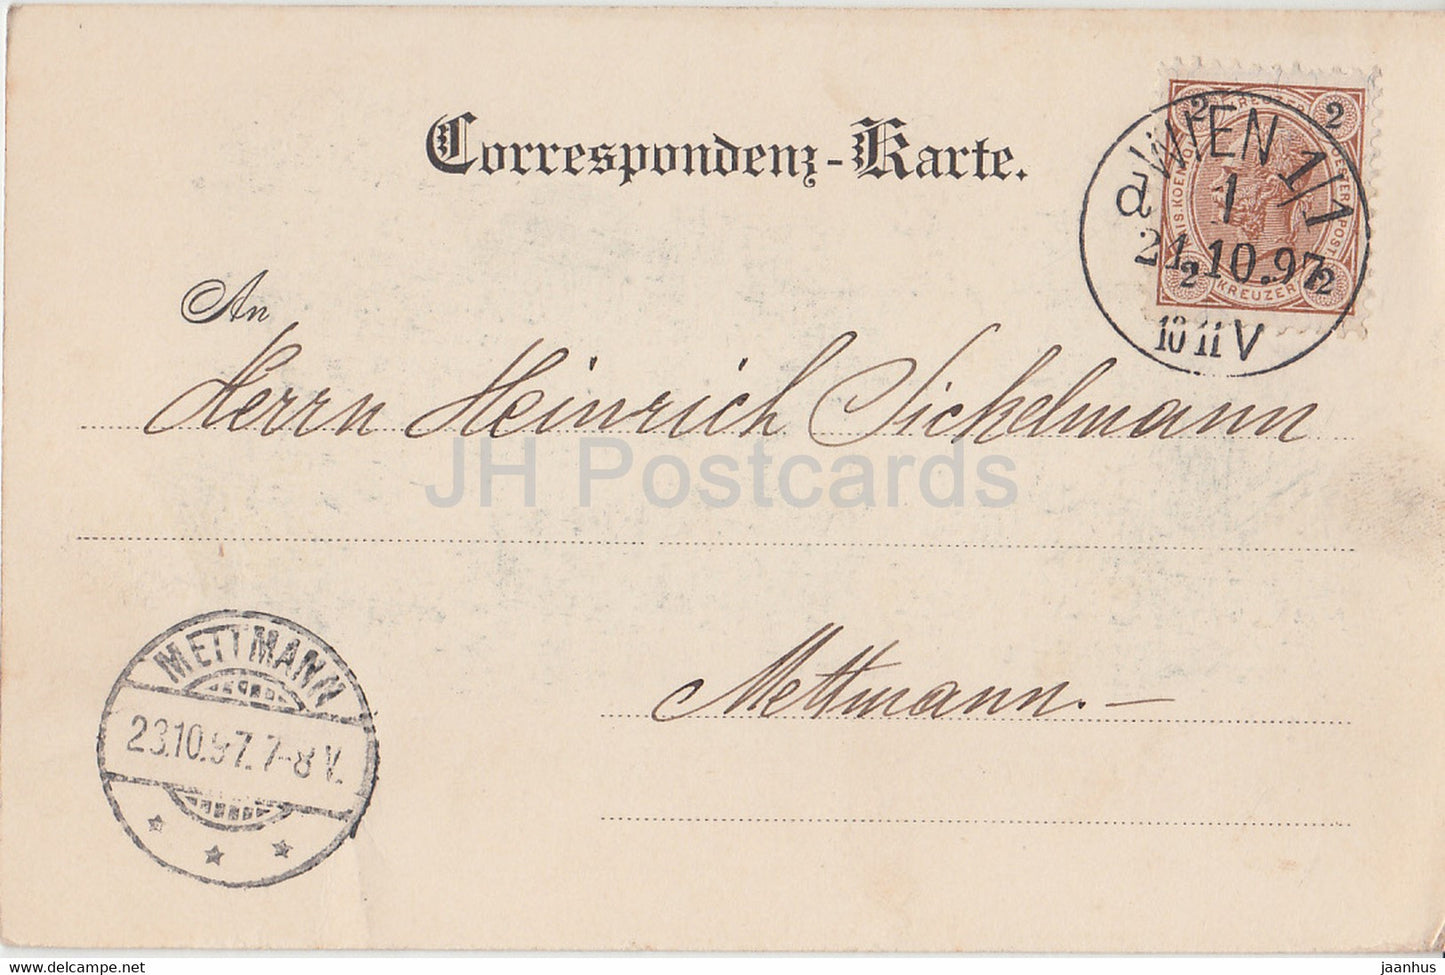 Gruss aus Wien - Wien - Burgmusik - alte Postkarte - 1897 - Österreich - gebraucht